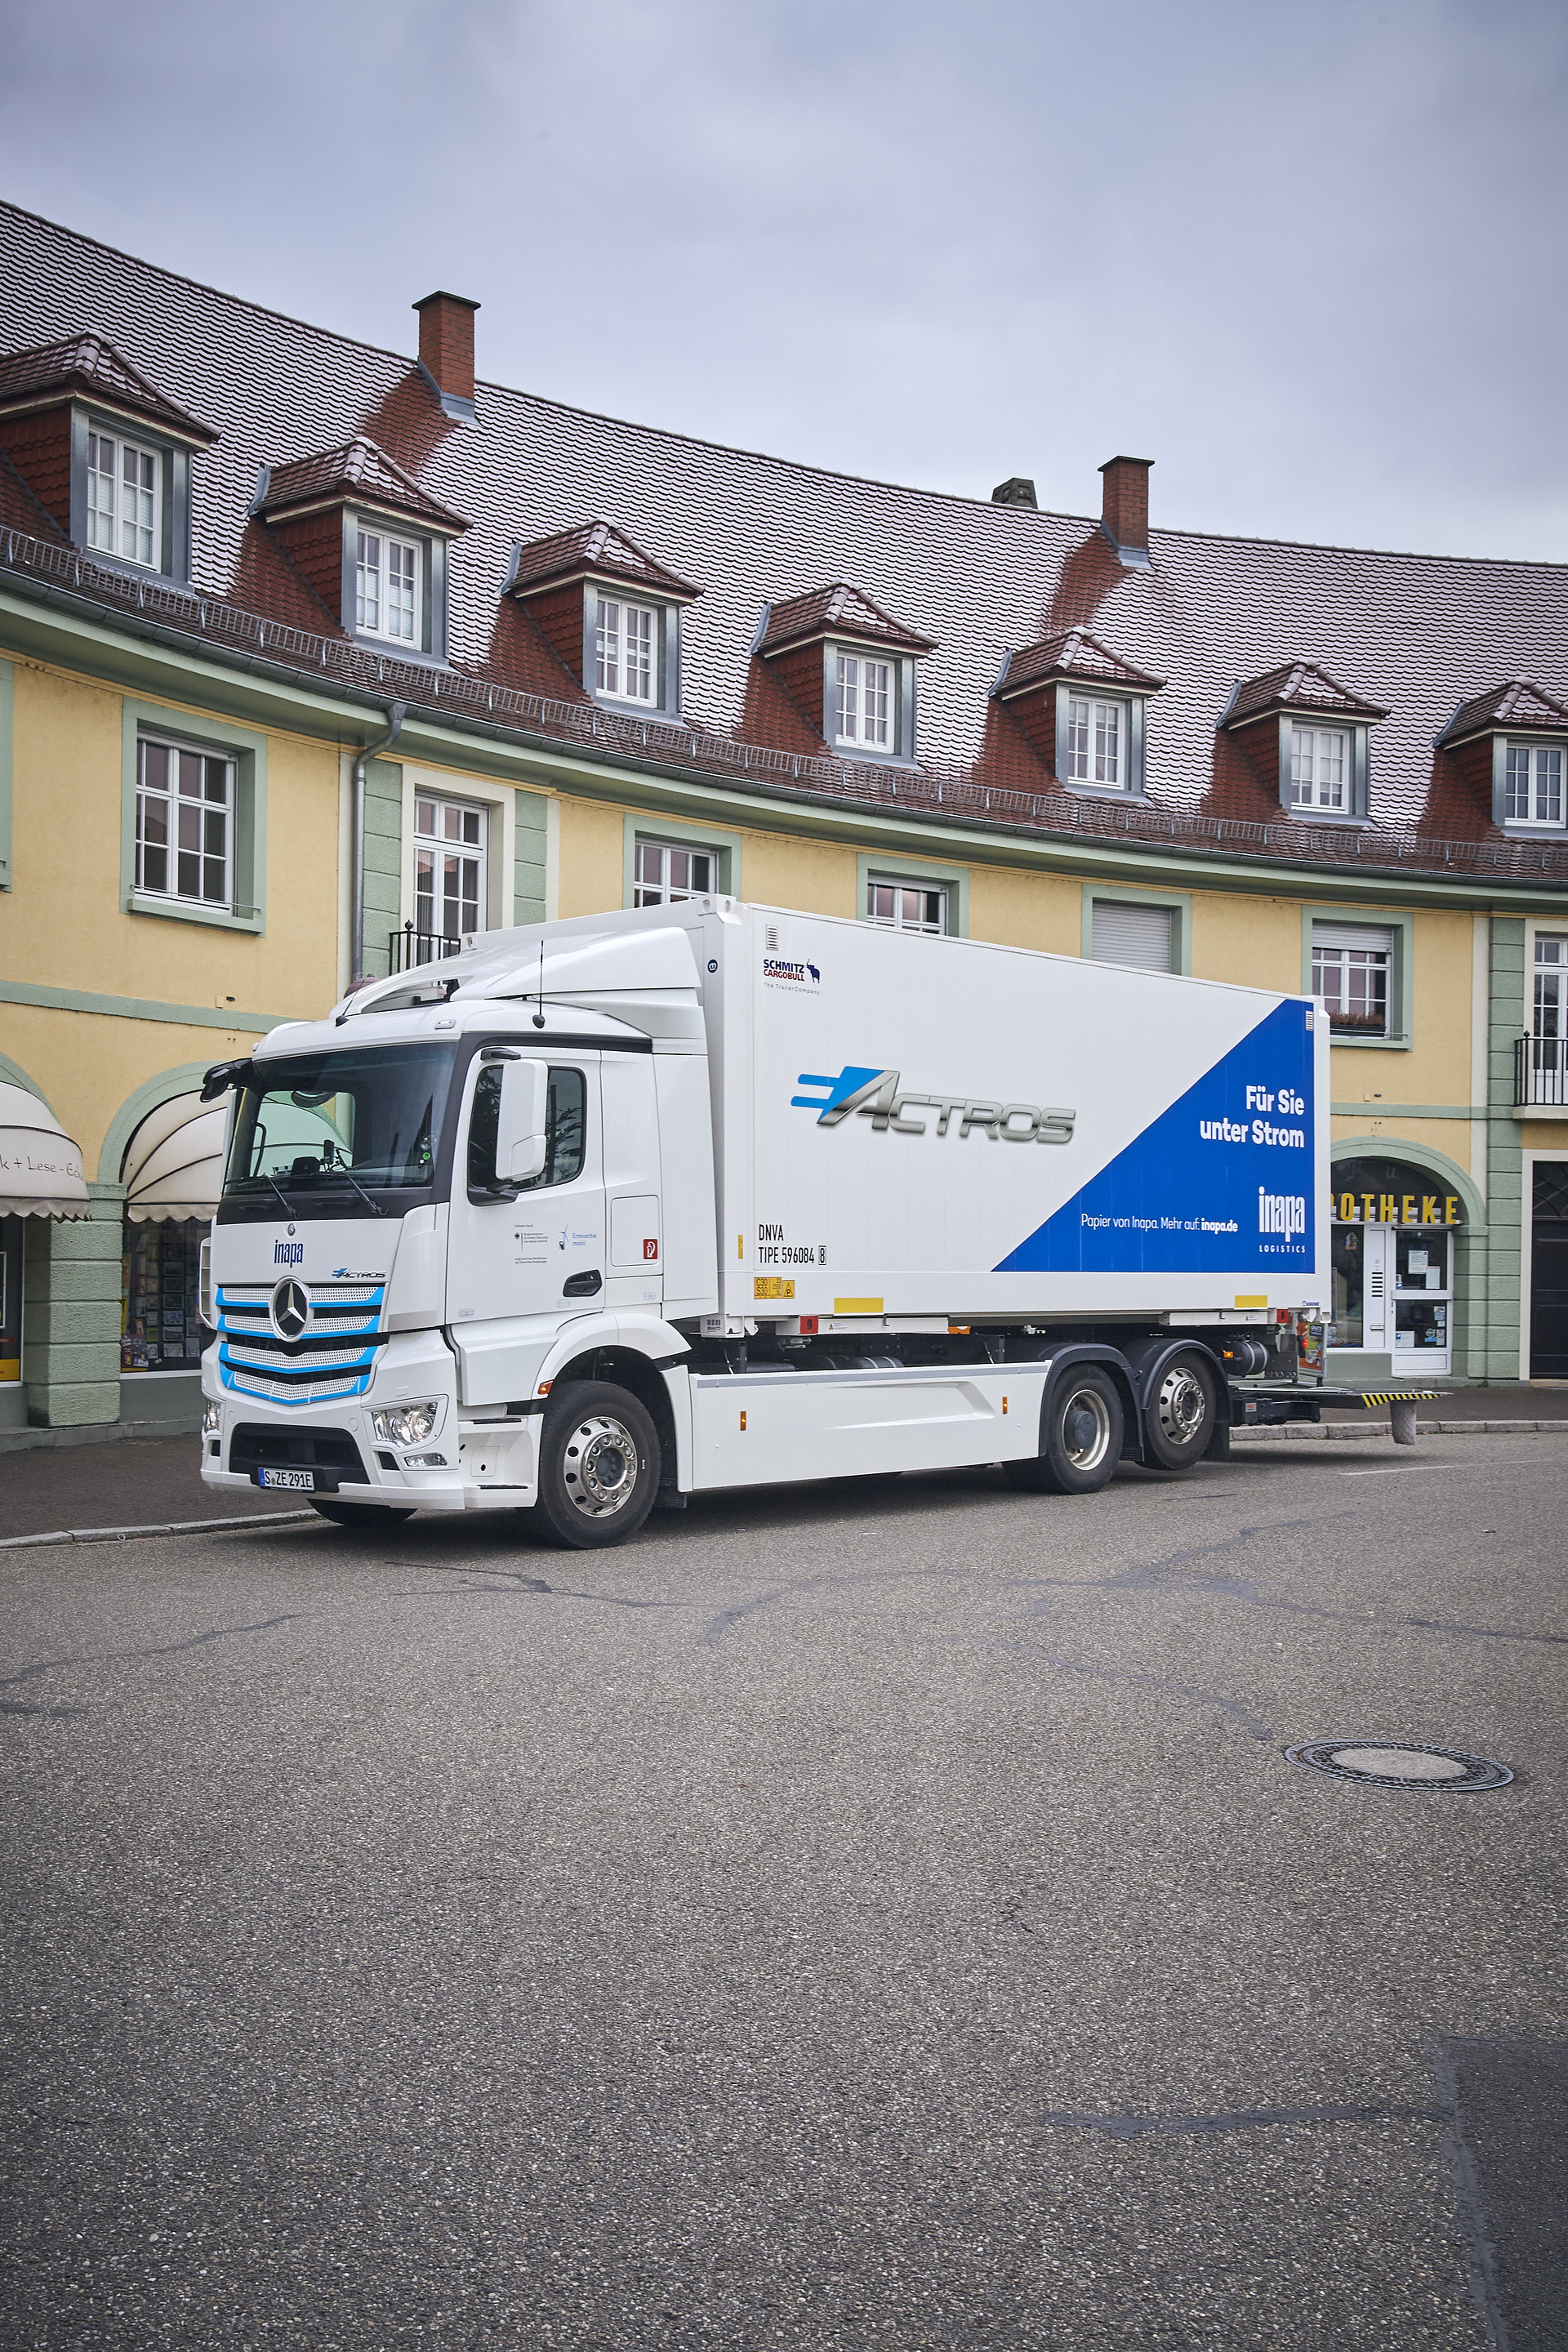 Vollelektrischer eActros jetzt in der Region Karlsruhe: Inapa Deutschland GmbH testet E-Lkw von Mercedes-Benz im Papiergroßhandel